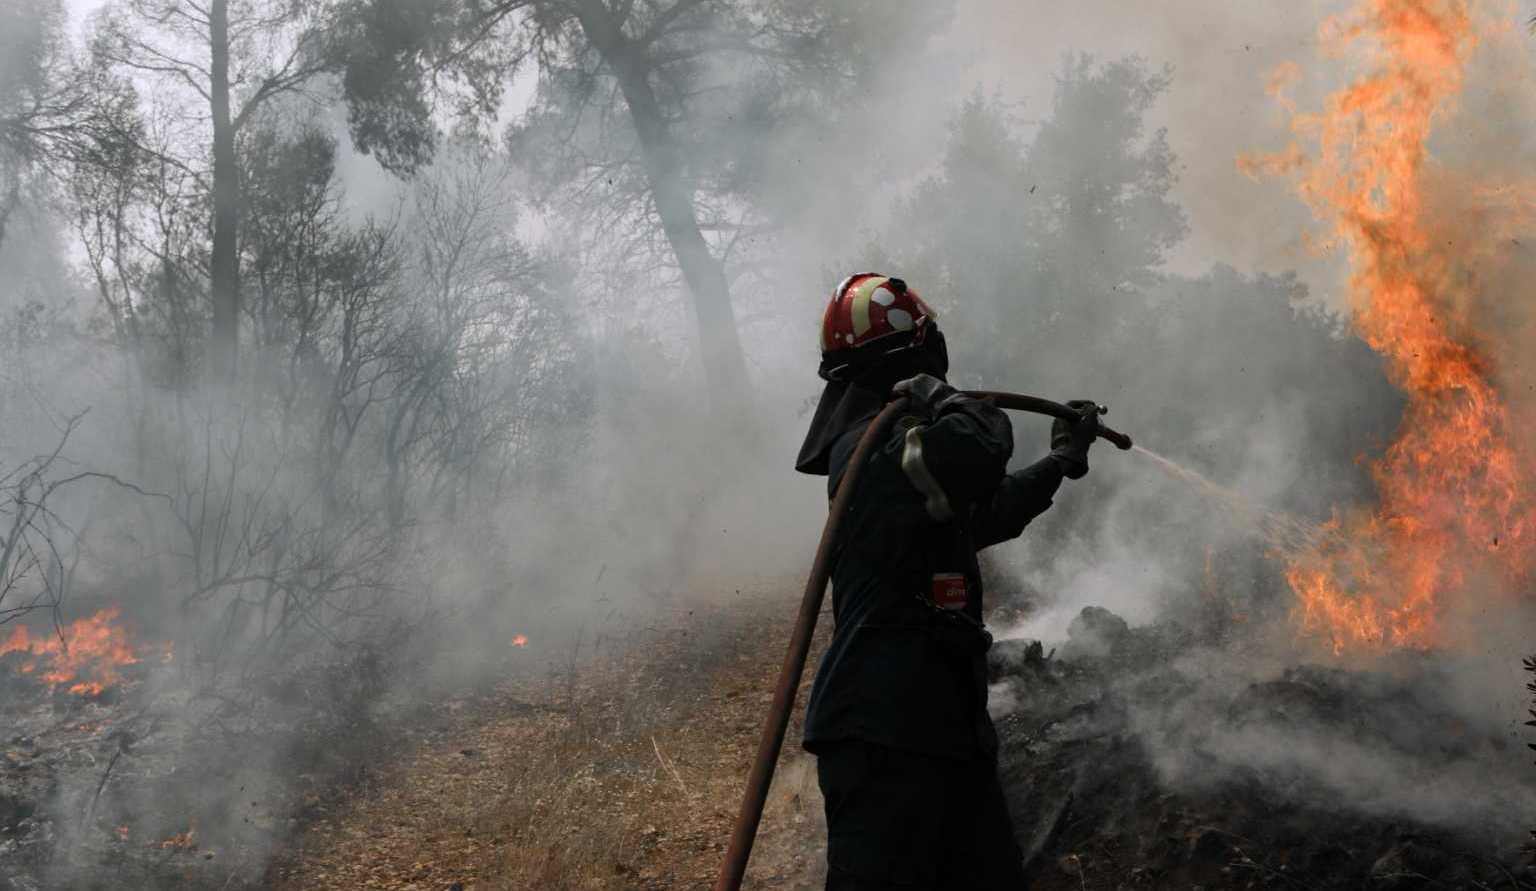 Εκτός ελέγχου η φωτιά στη Χίο: Οι φλόγες σε αυλές σπιτιών – Εκκενώθηκαν δύο οικισμοί – Λιποθύμησε πυροσβέστης (φώτο)